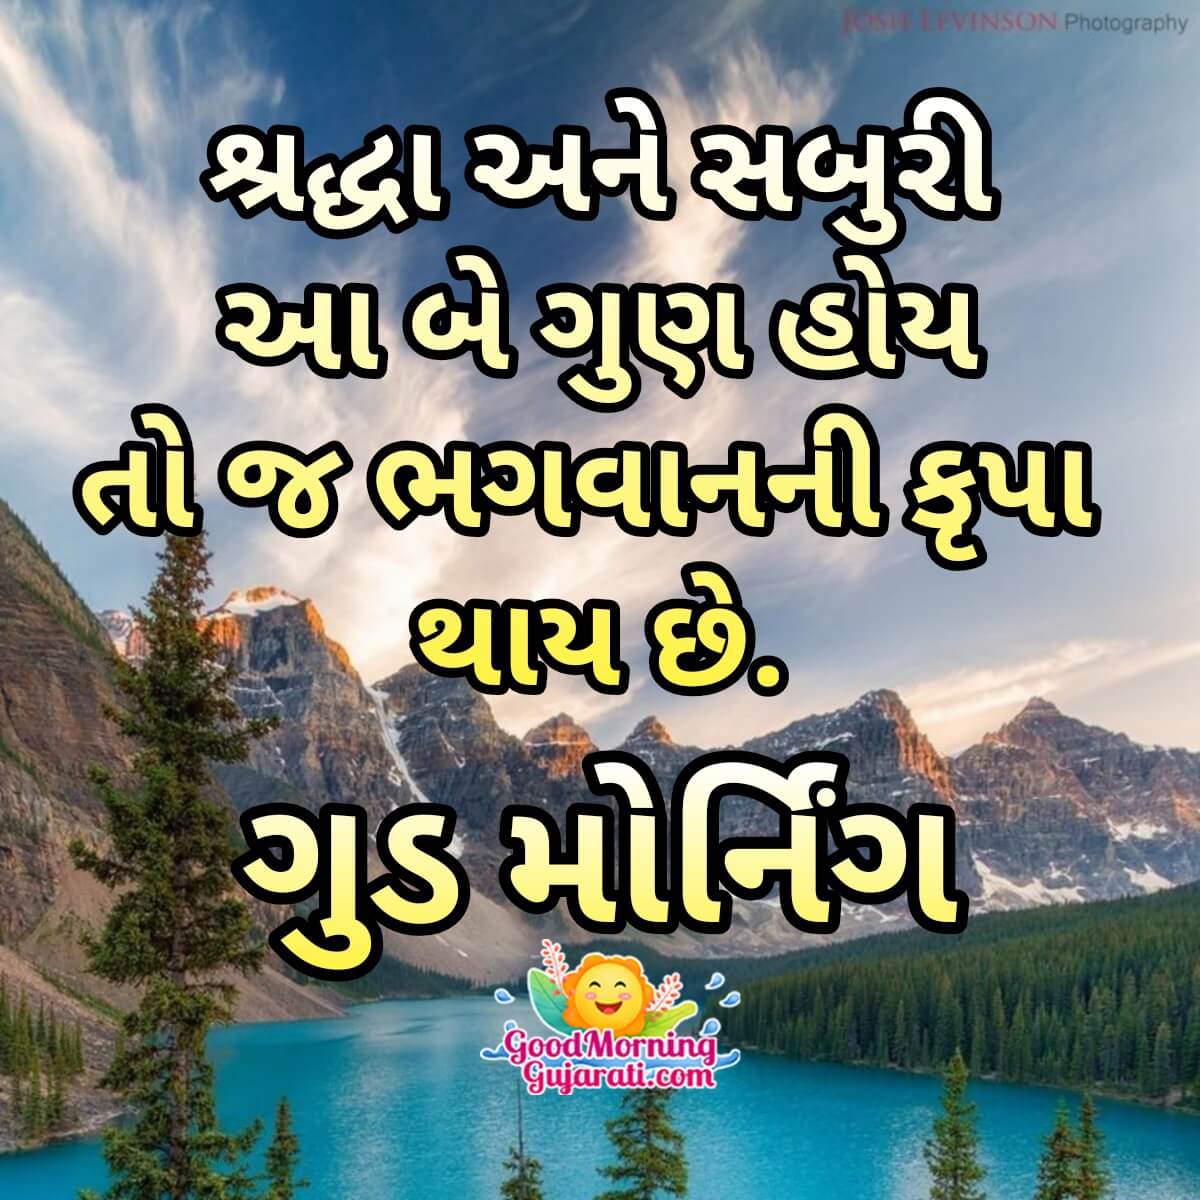 Good Morning Shraddha Saburi Quote